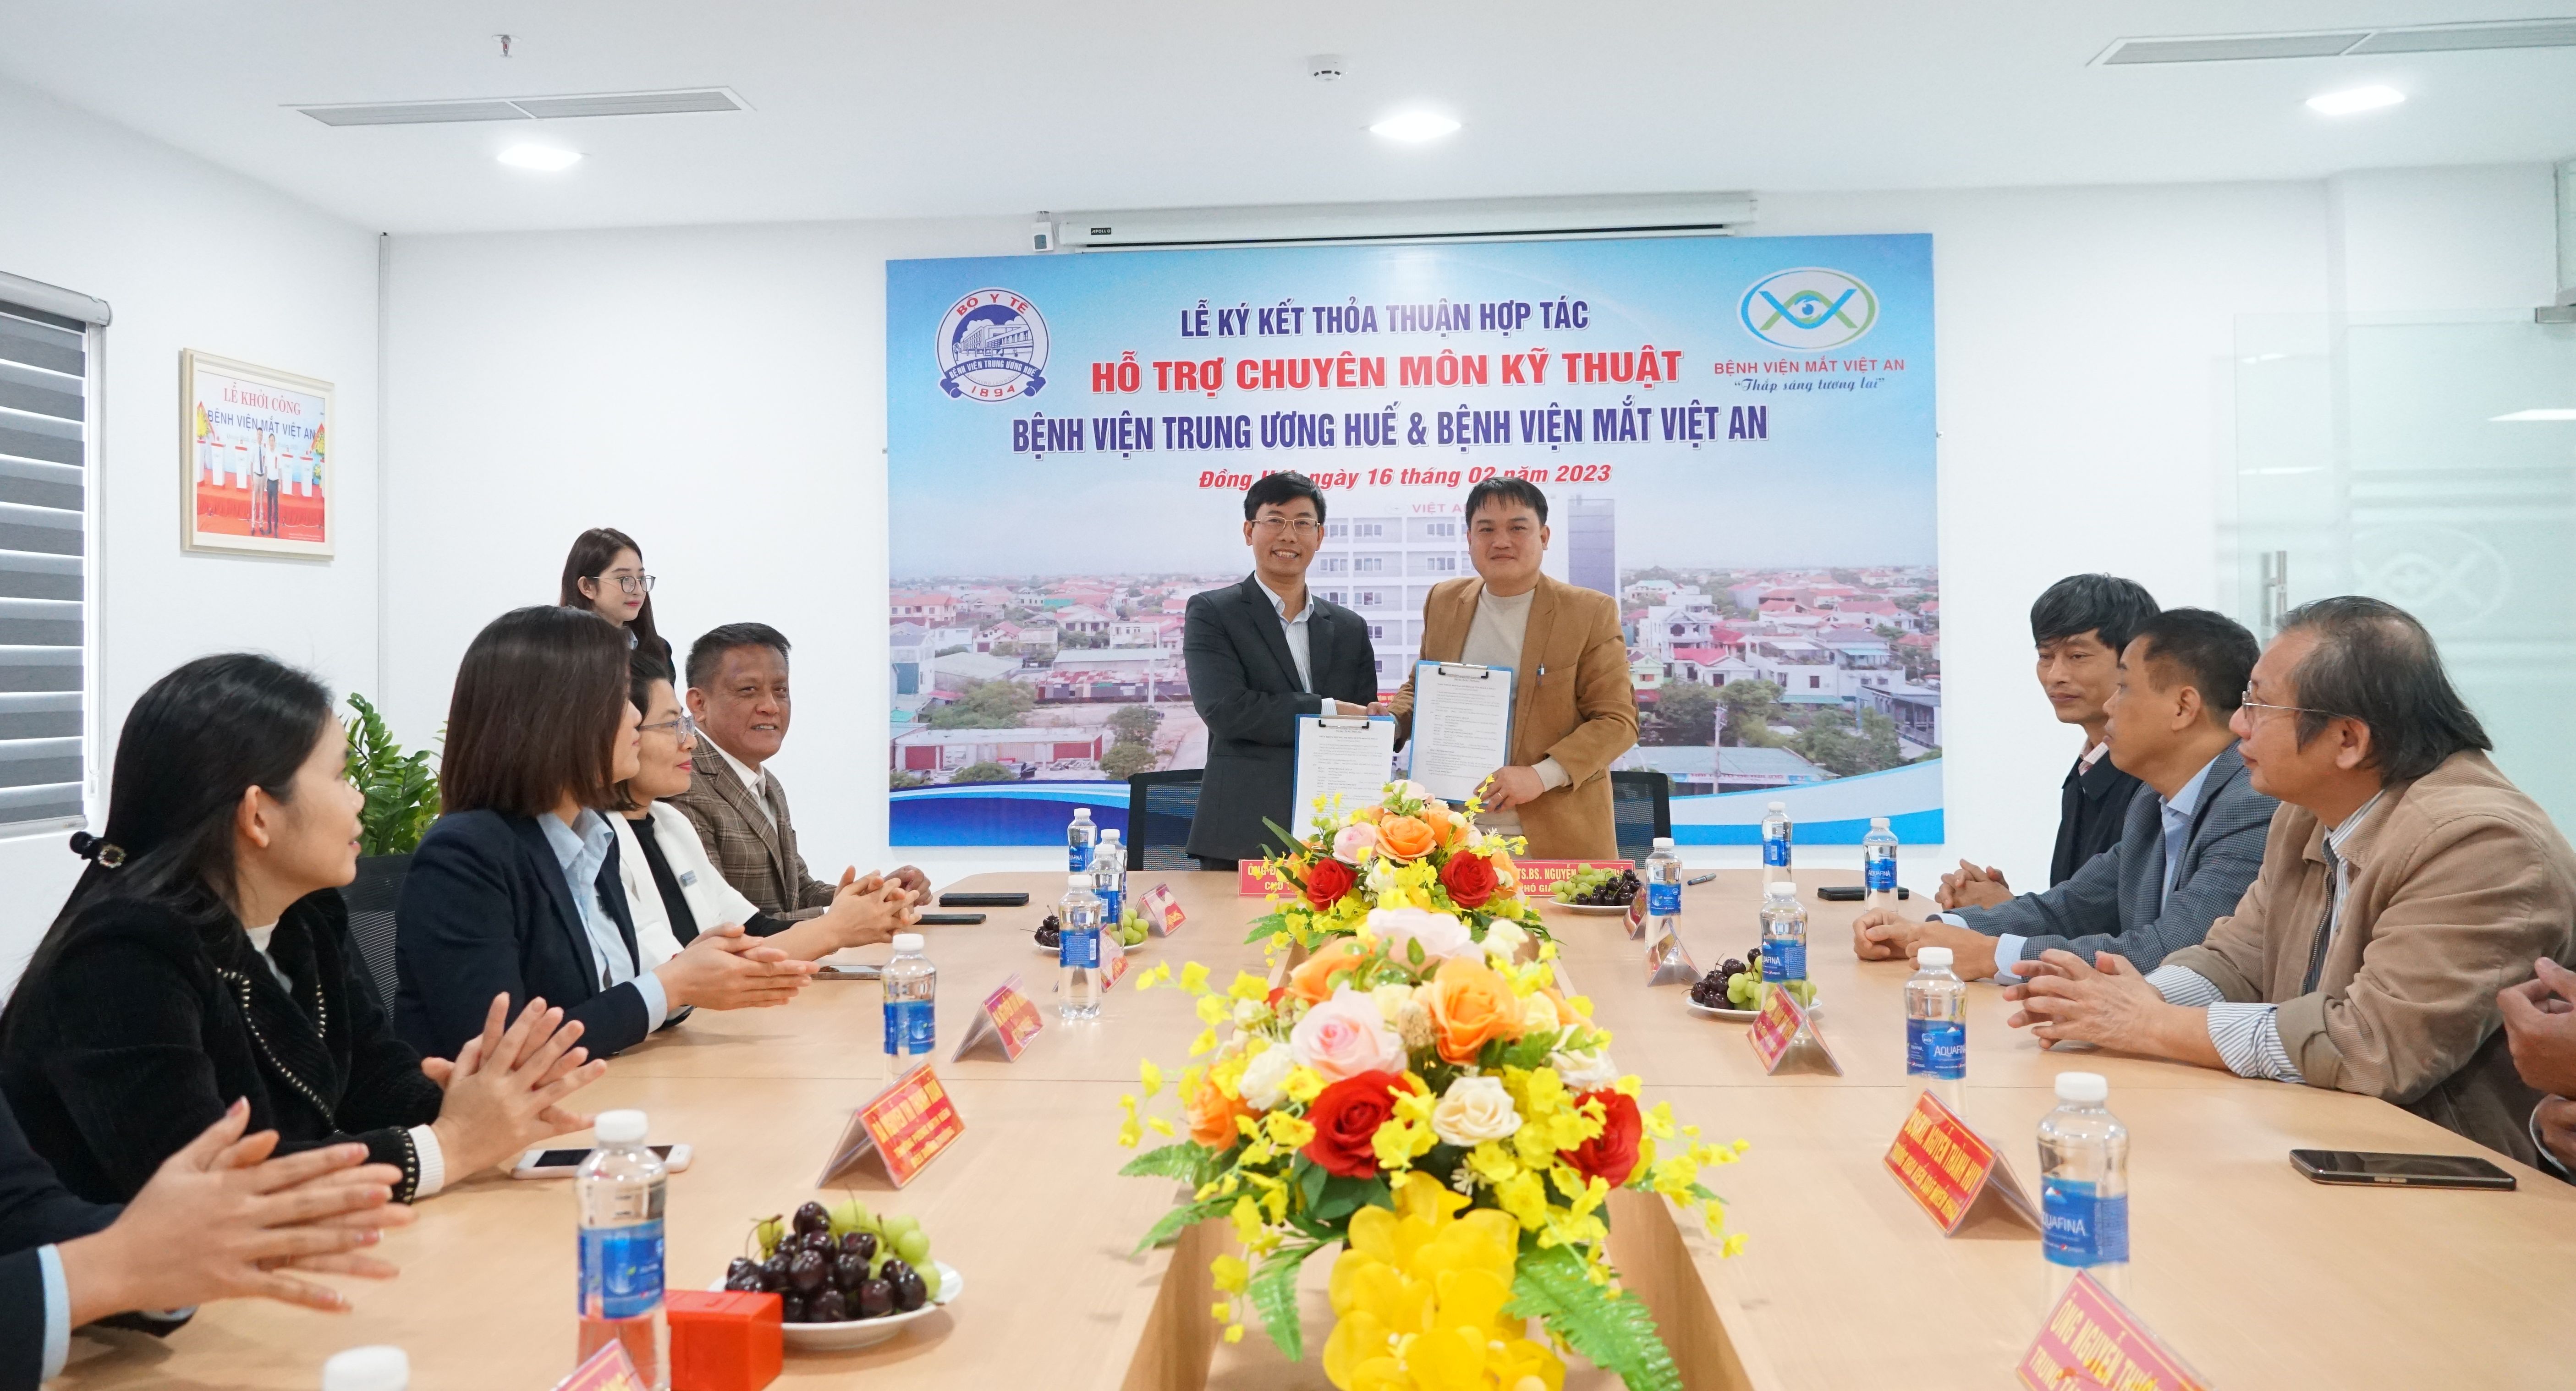 : Lãnh đạo Bệnh viện Mắt Việt An (Quảng Bình) và Bệnh viện Trung ương Huế ký kết thỏa thuận hợp tác, hỗ trợ chuyên môn kỹ thuật về nhãn khoa.